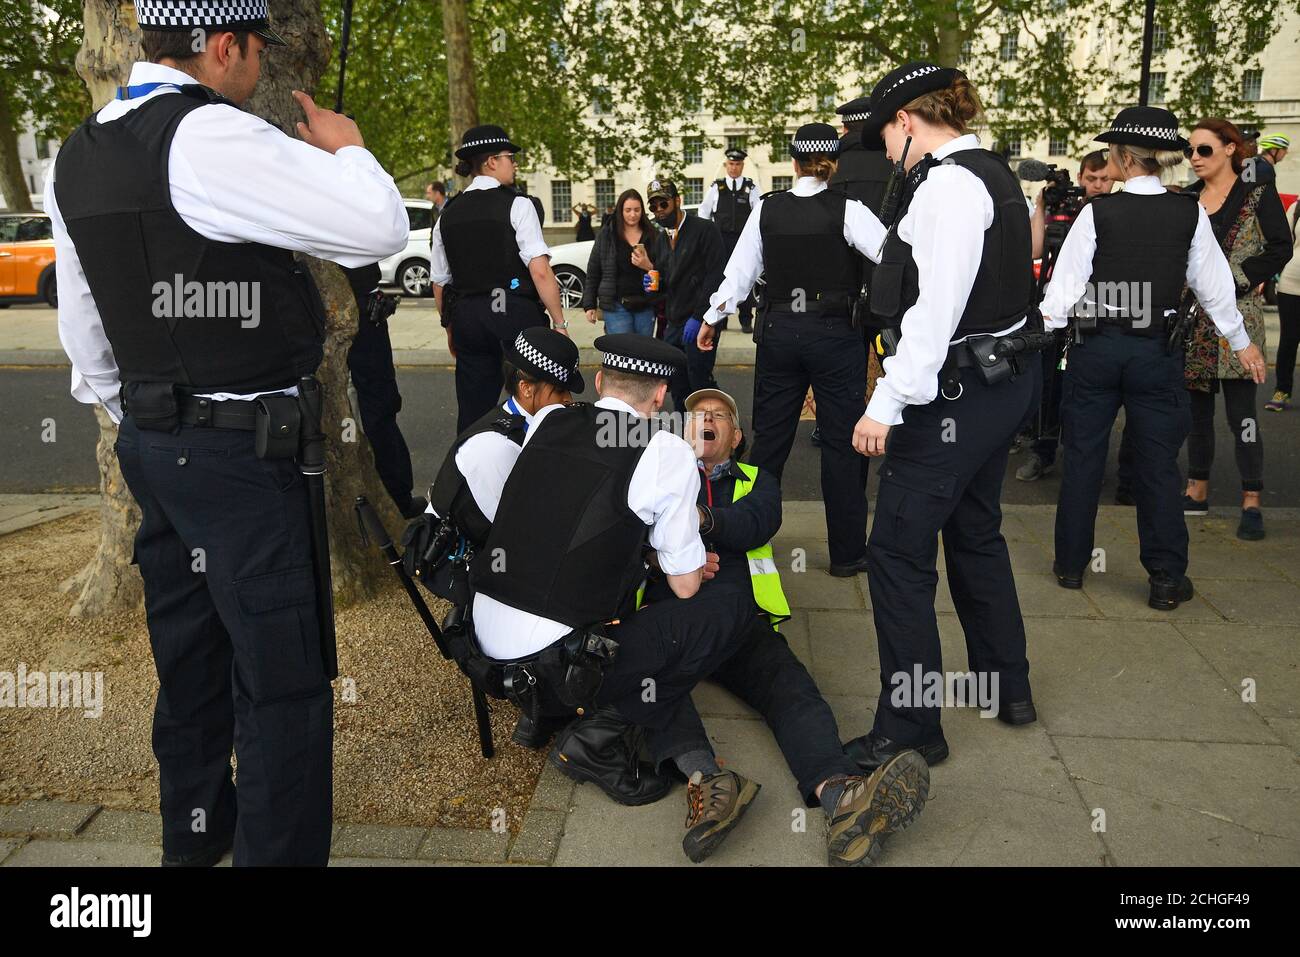 Ein Mann wird von Polizisten während eines Protestes gegen die Covid-19-Sperre vor New Scotland Yard in London festgehalten. Stockfoto